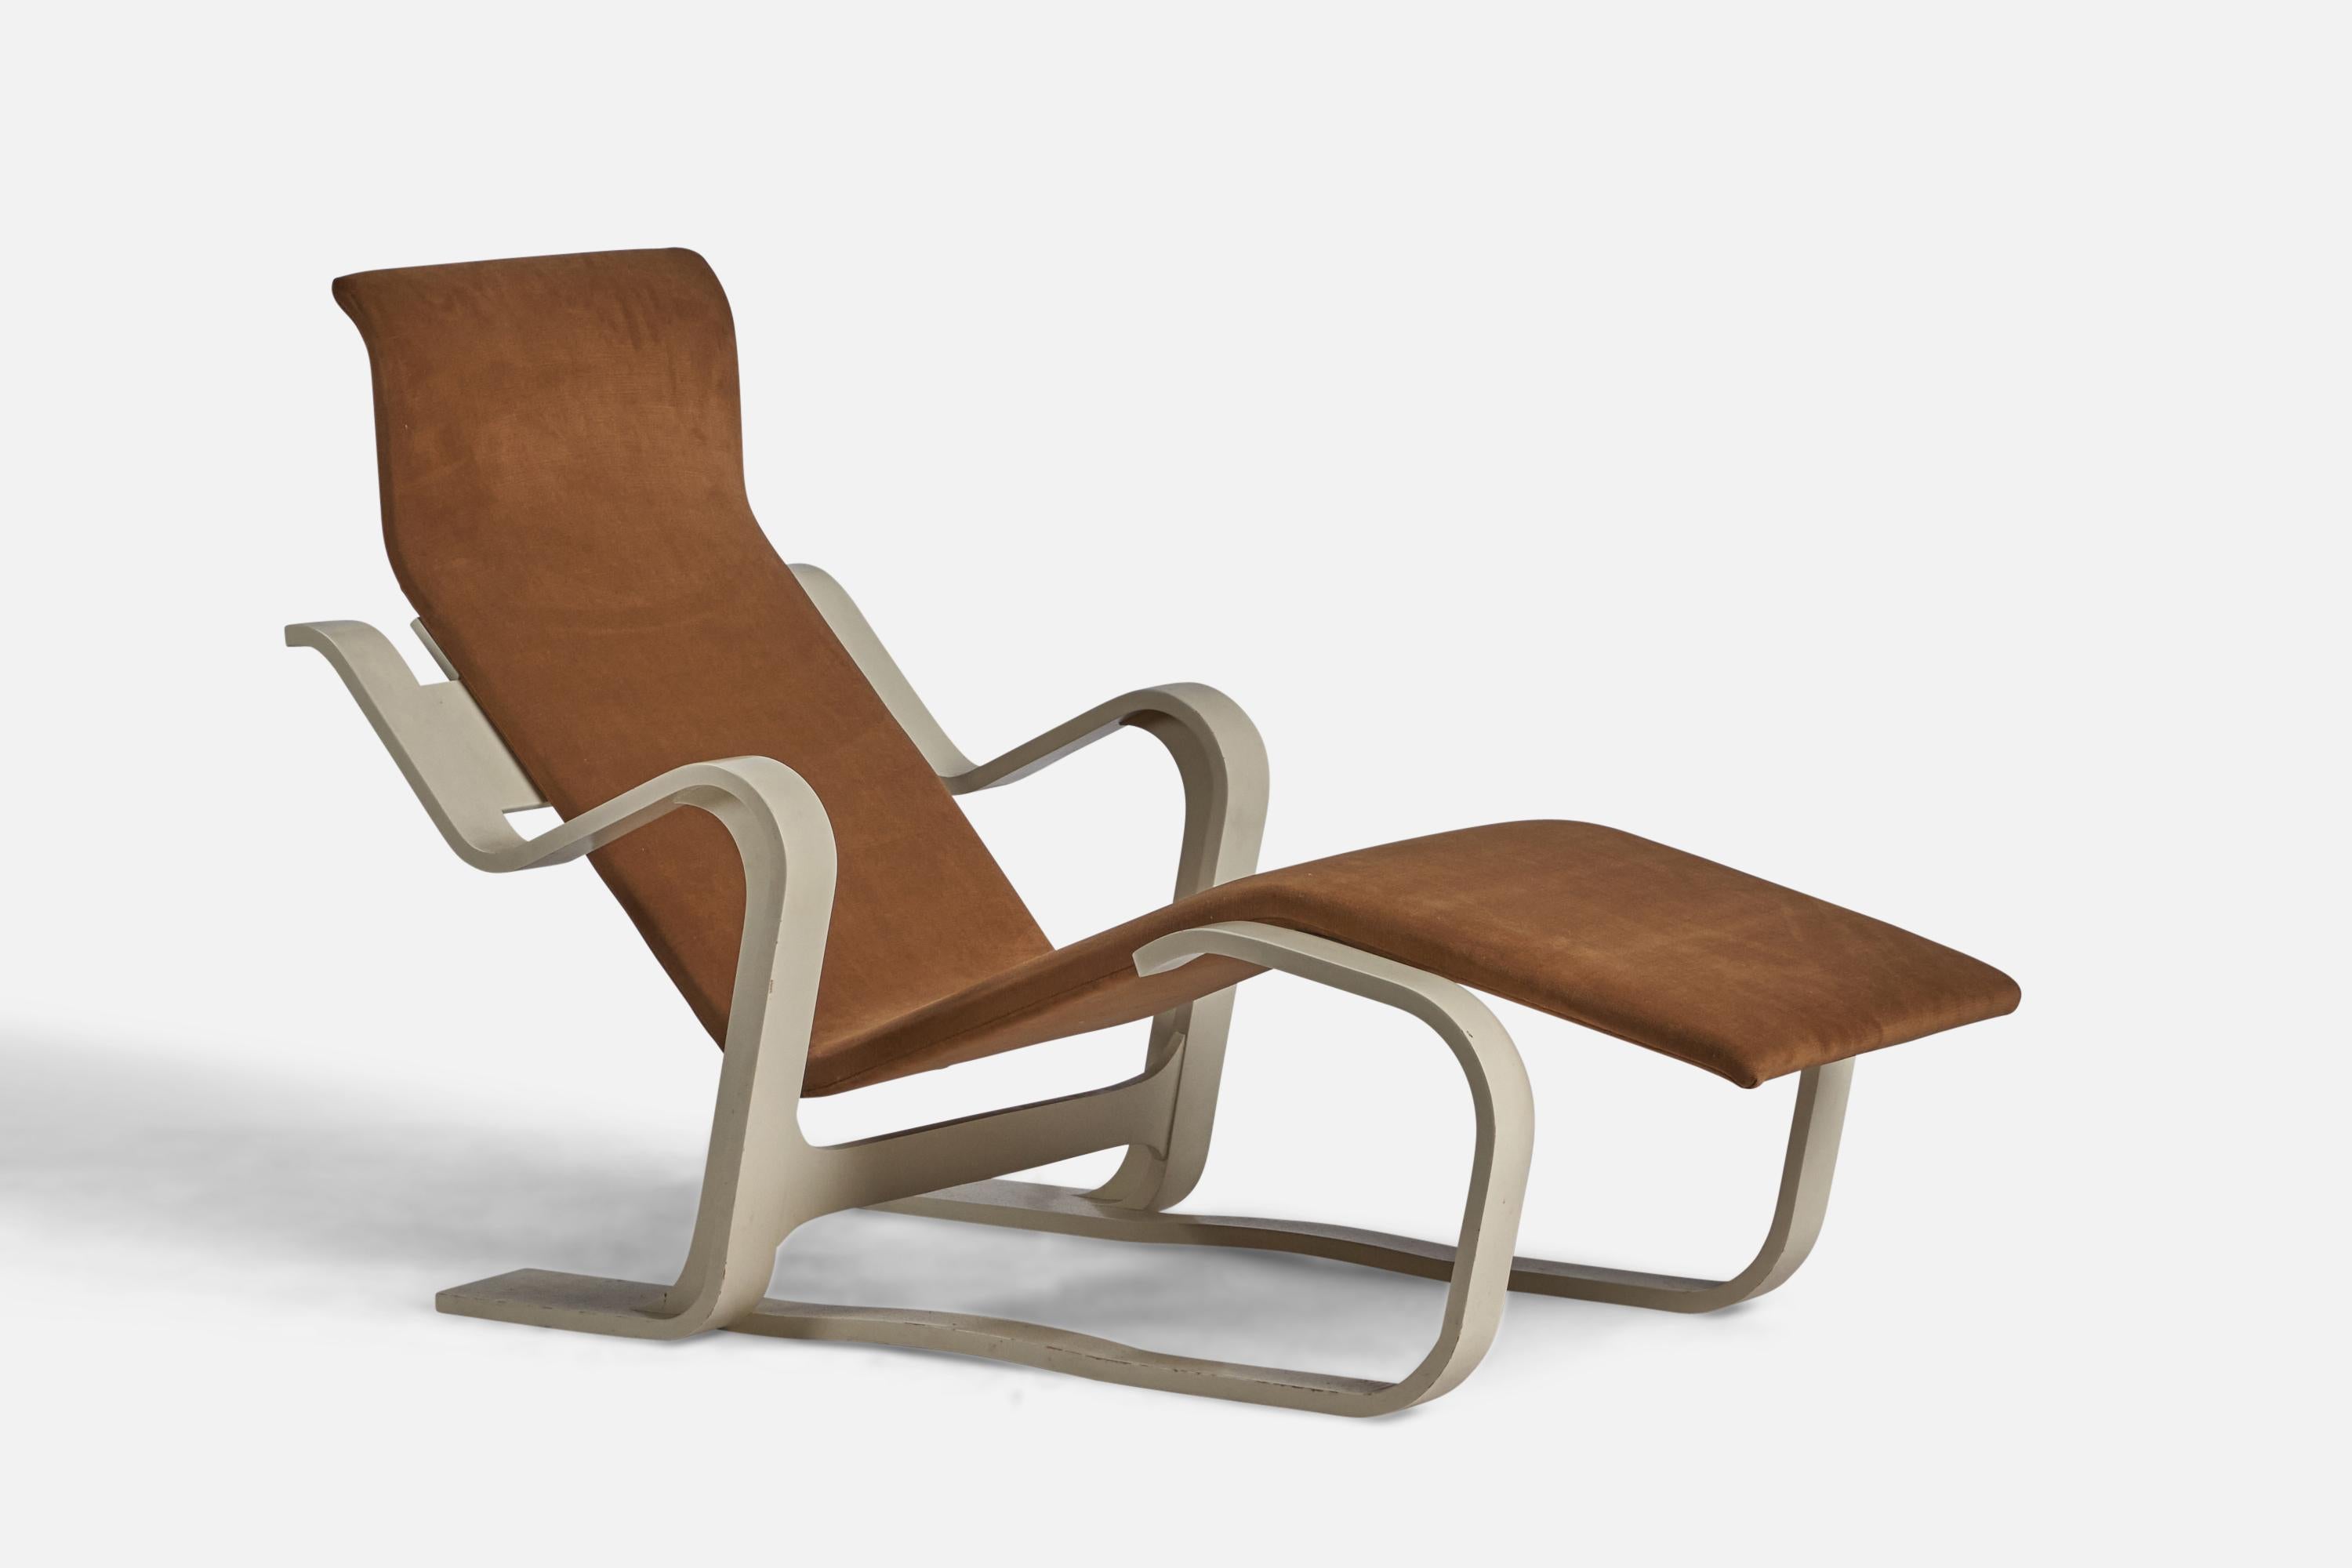 Eine Chaiselongue aus weiß lackiertem Holz und braunem Samtstoff, entworfen von Marcel Breuer und hergestellt von Knoll International, um 1960.
Sitzhöhe: 8.75